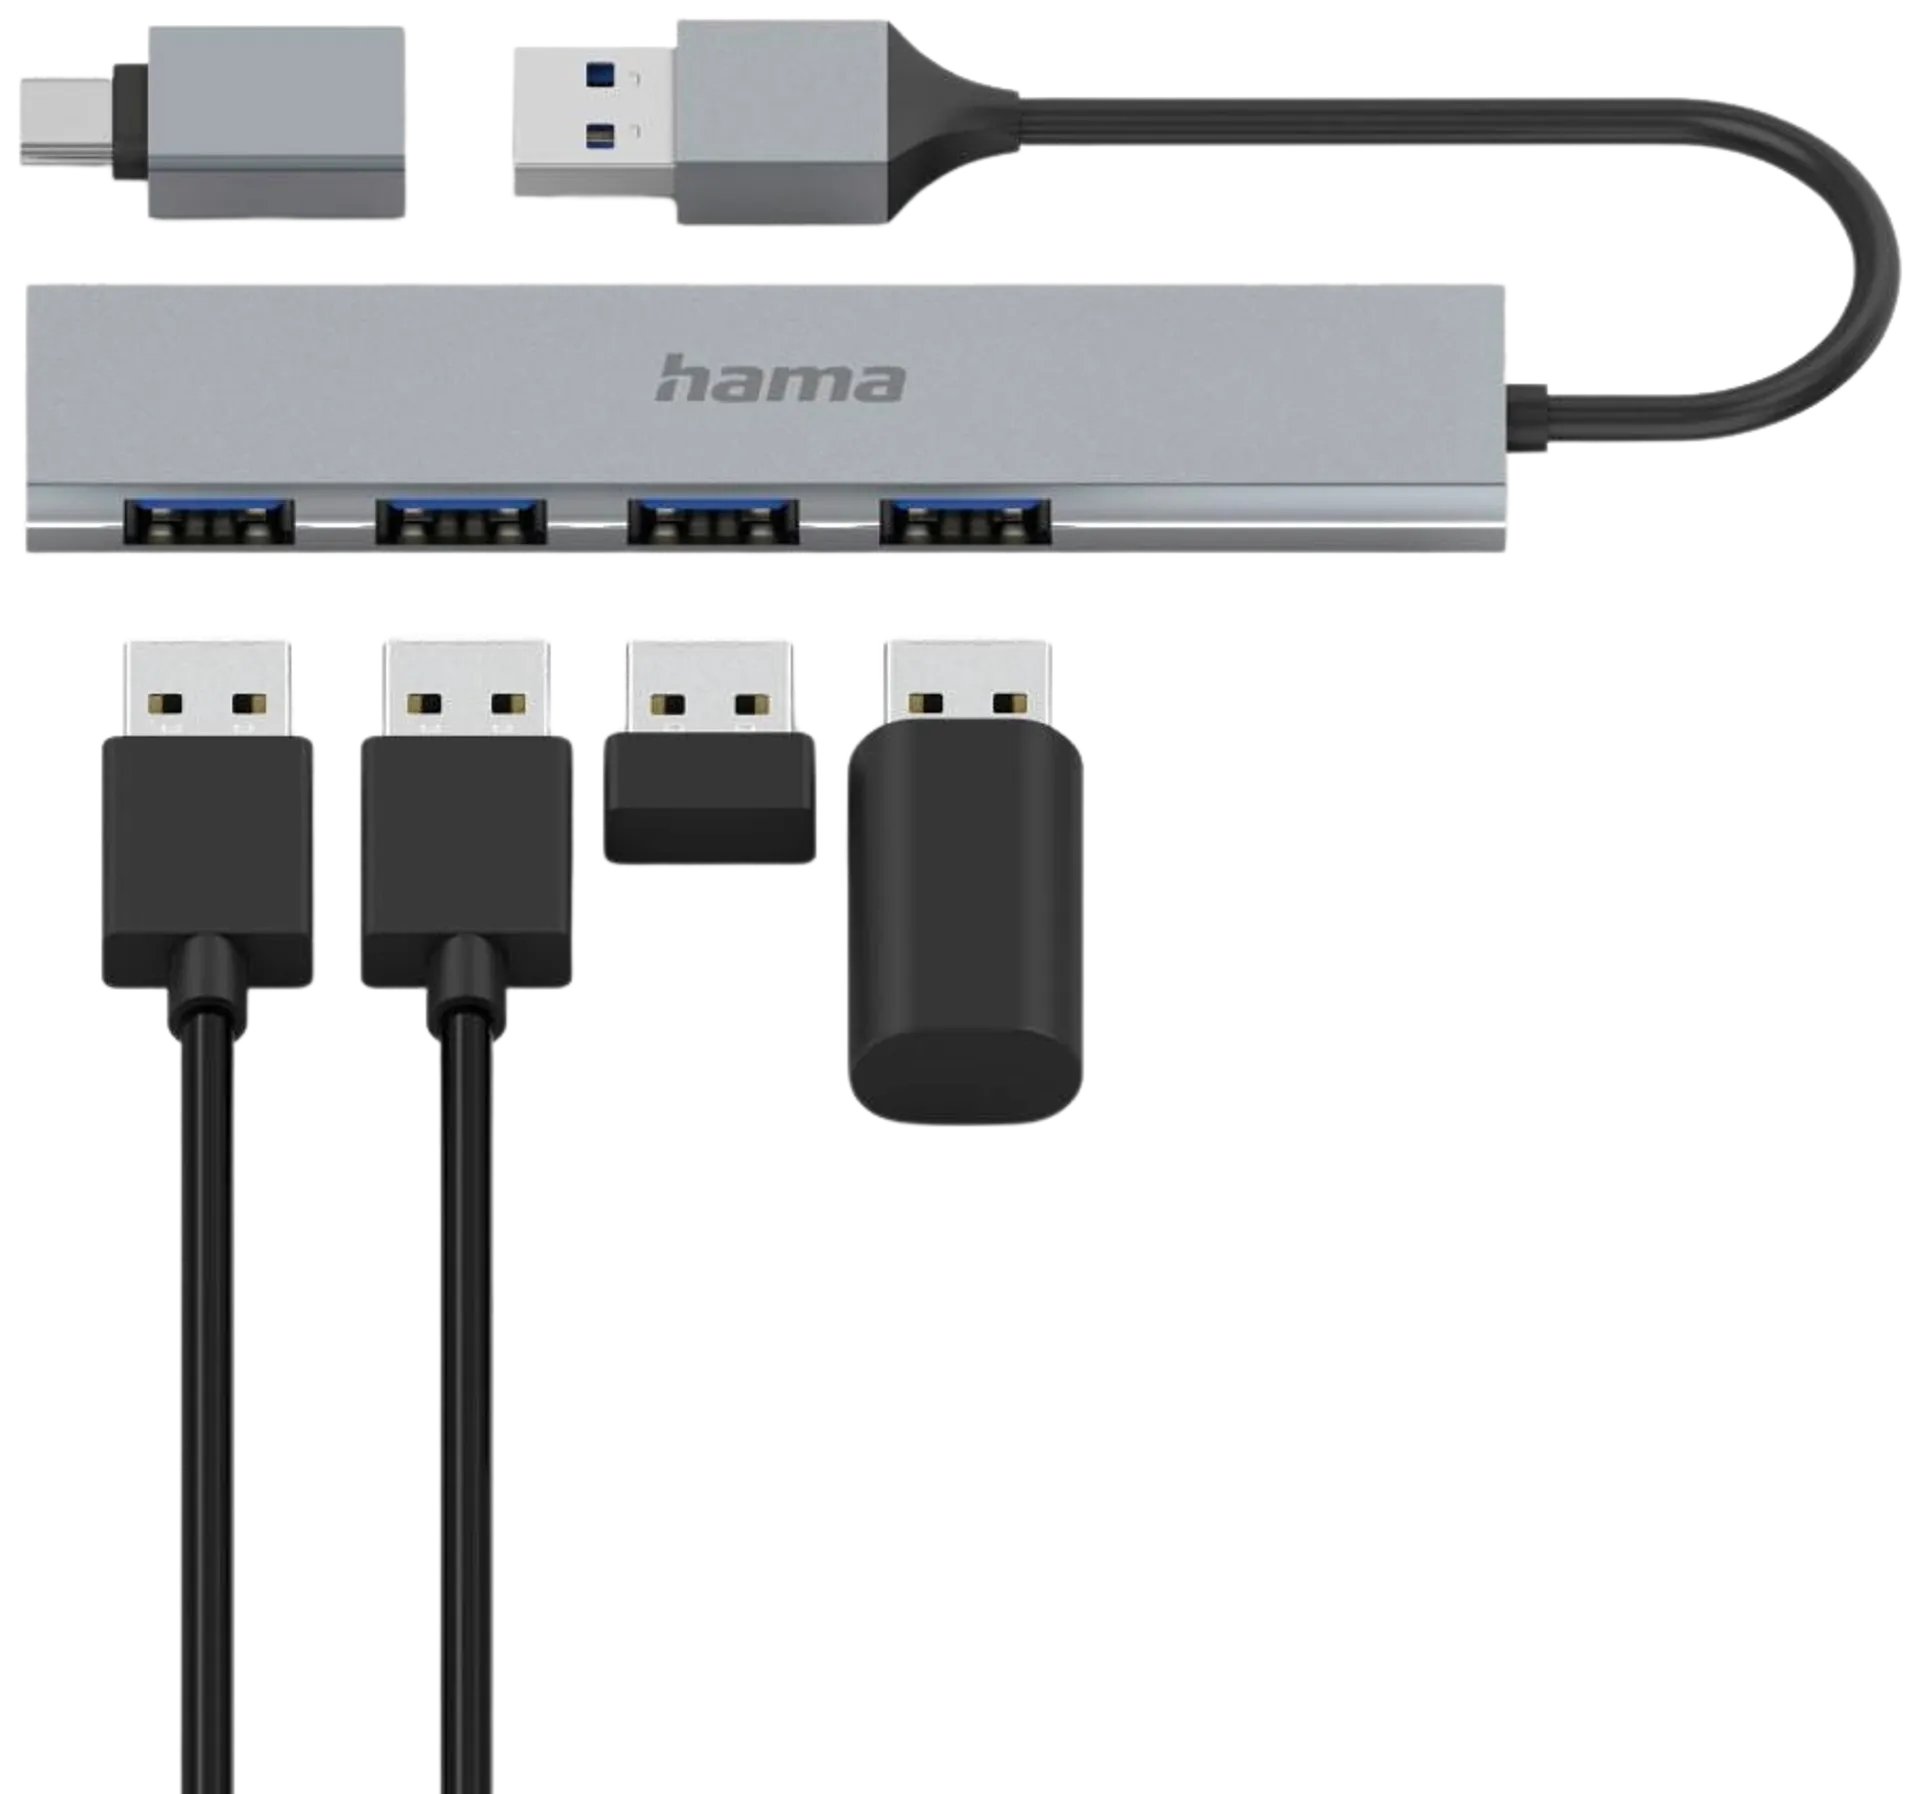 Hama USB-hubi, 4-porttinen, USB-A uros, USB-C adapteri, 4 x USB-A, USB 3.2 Gen 1, 5 Gbit/s, Ultra-slim, 0,15 m - 4